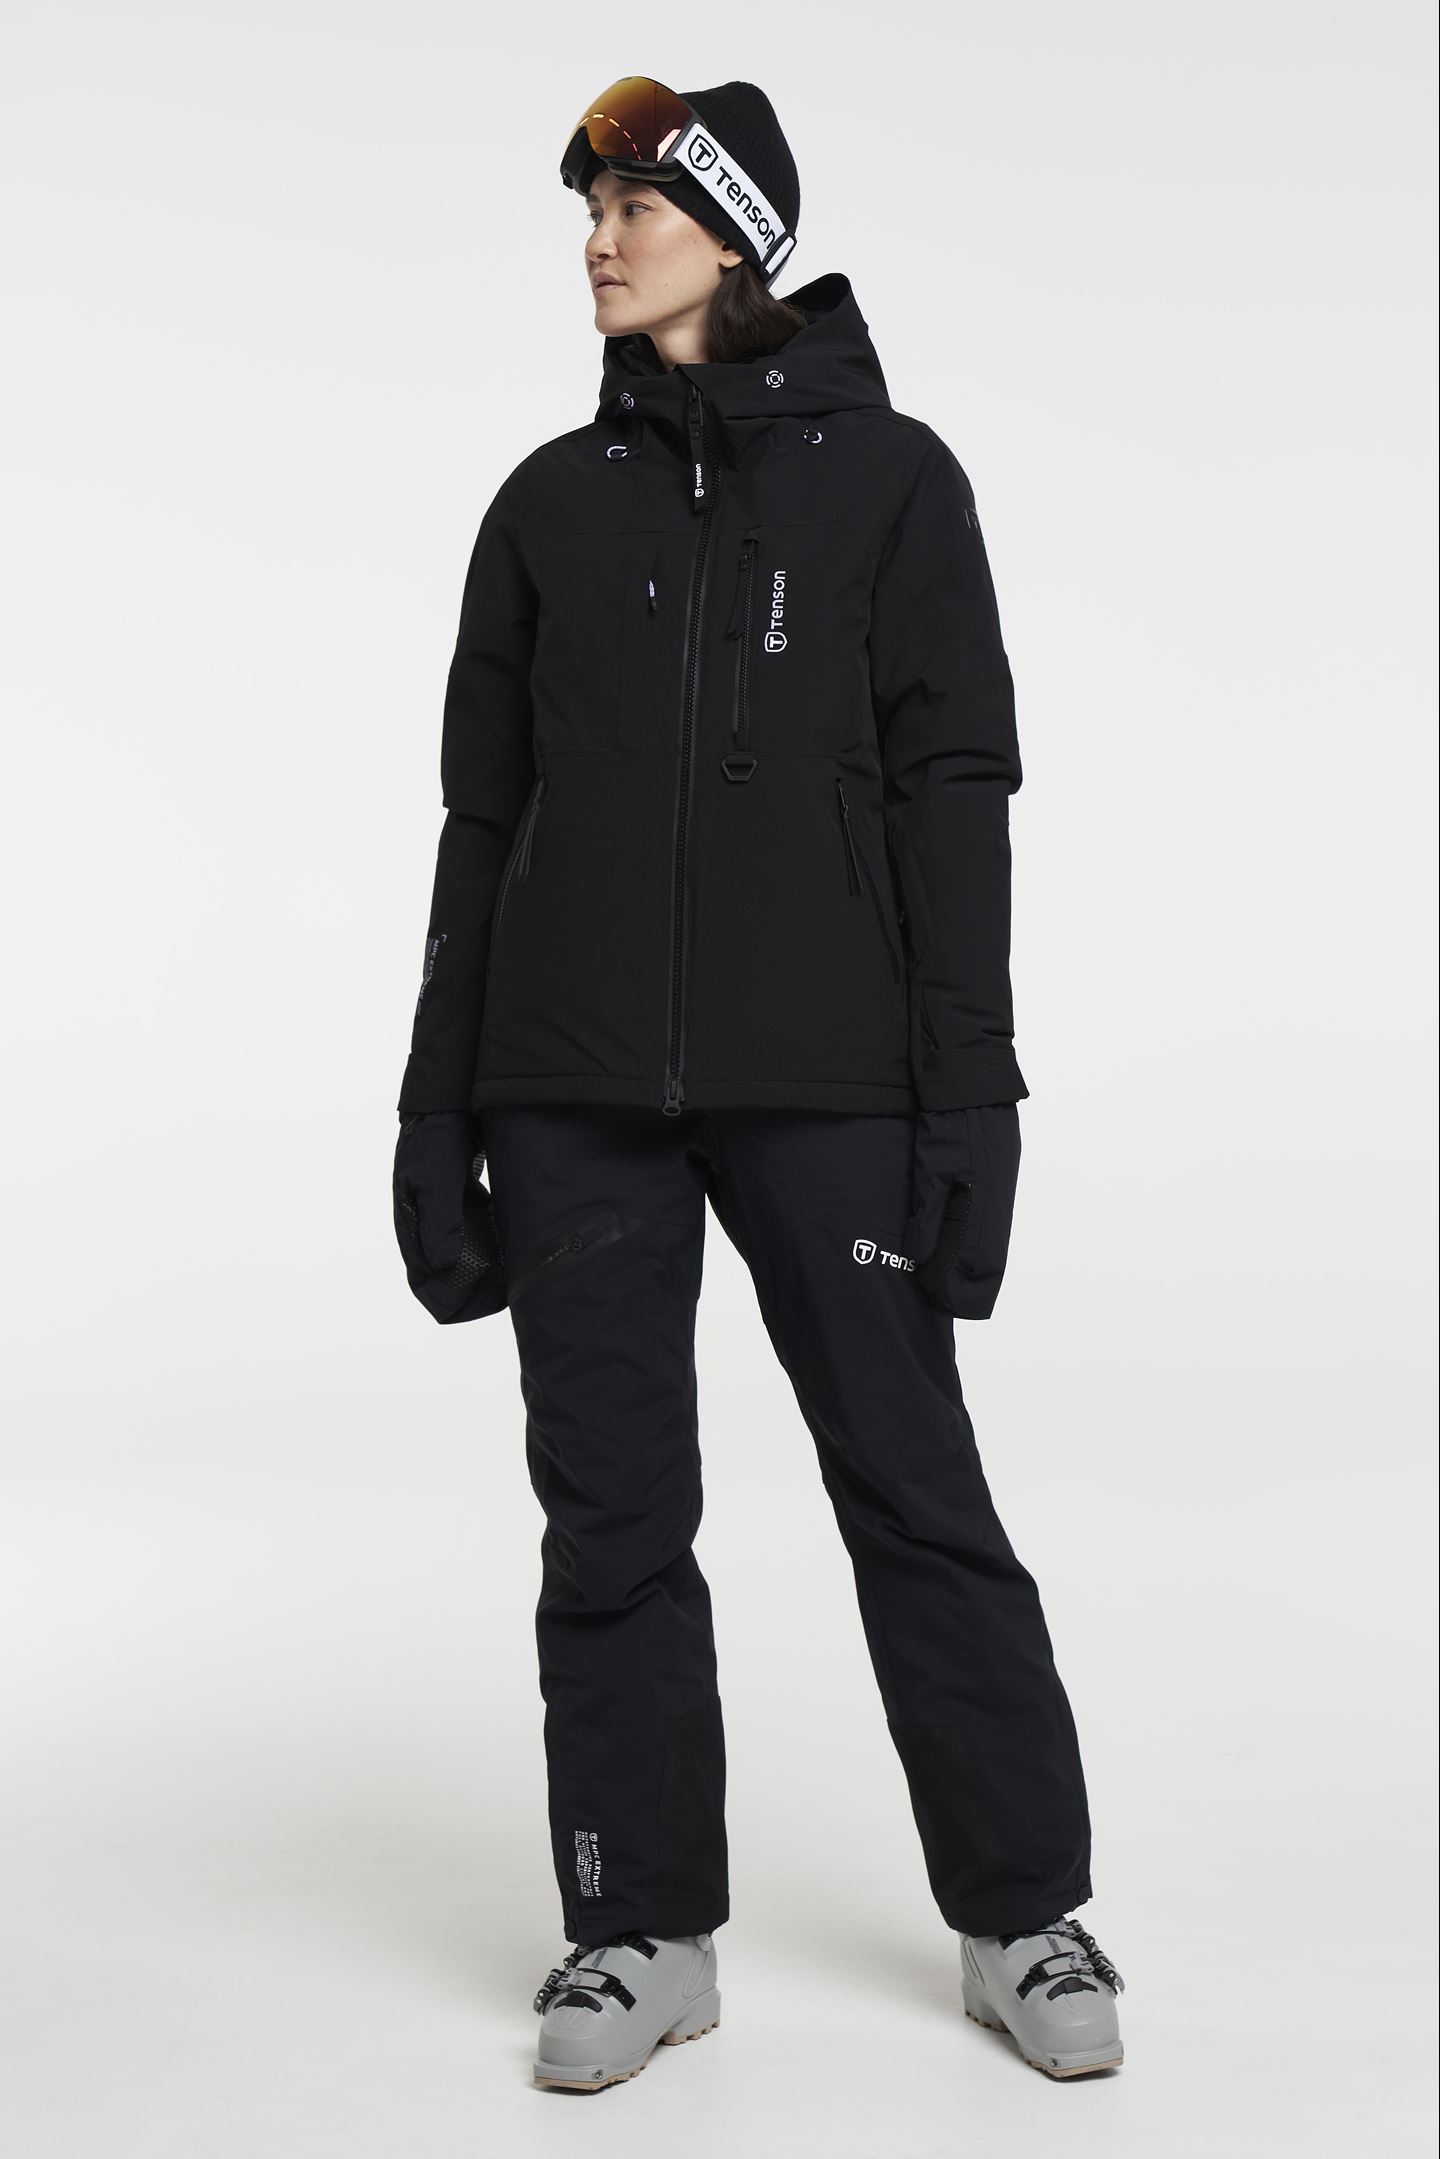 documentaire Haarzelf bijzonder Orbit Ski Jacket - Women's Lined Ski Jacket - Black